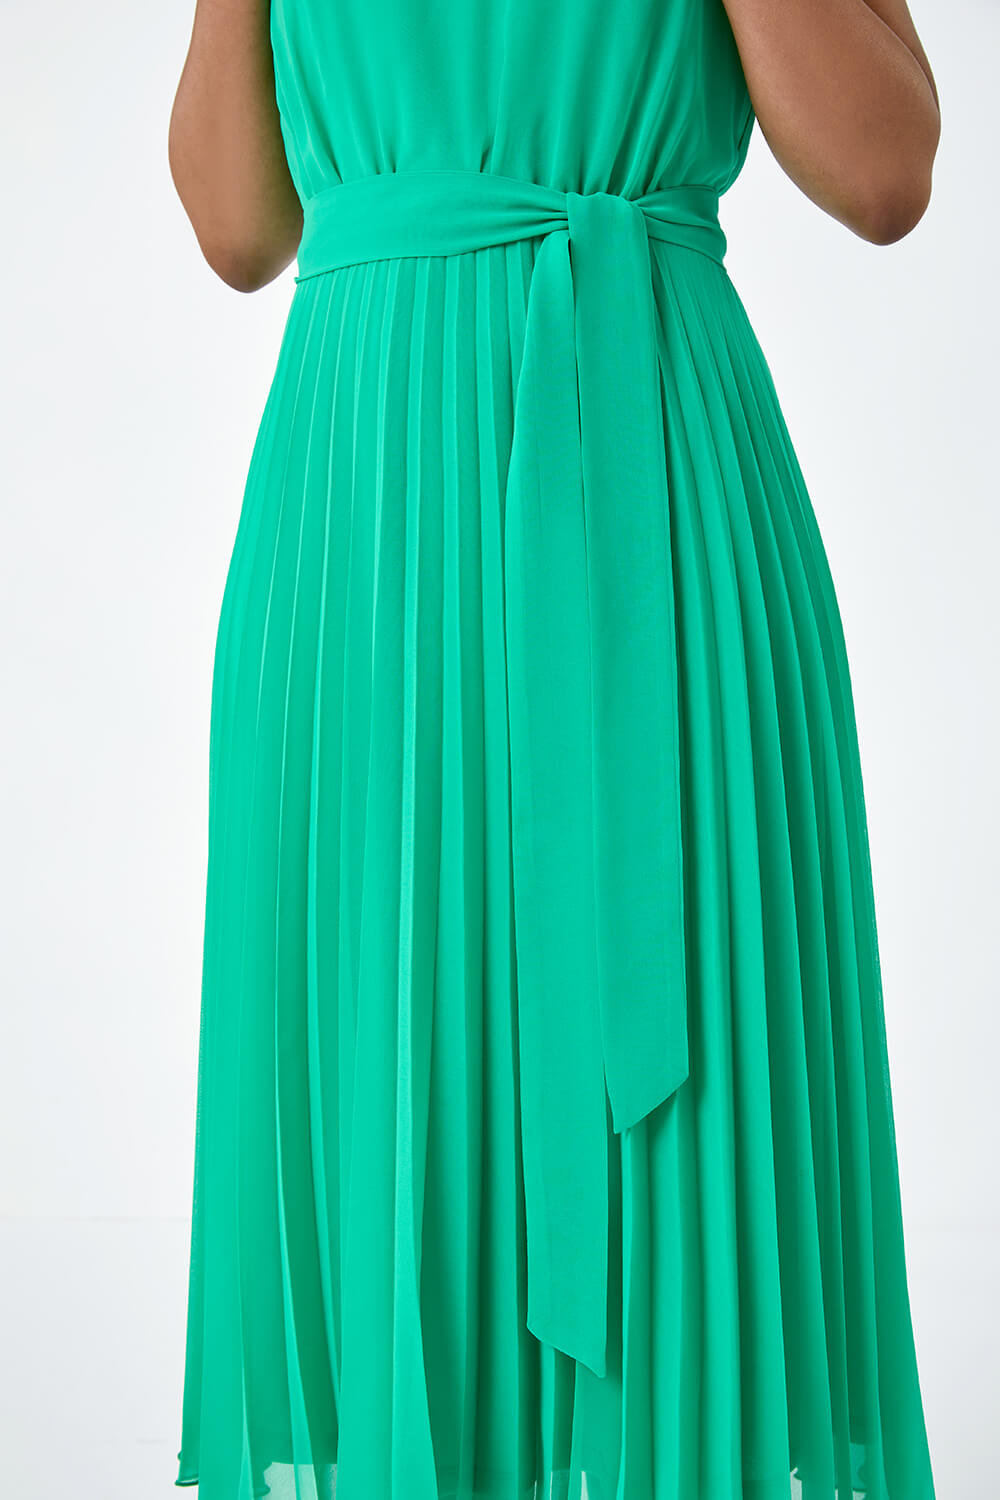 Green Petite Pleated Chiffon Midi Dress, Image 5 of 5